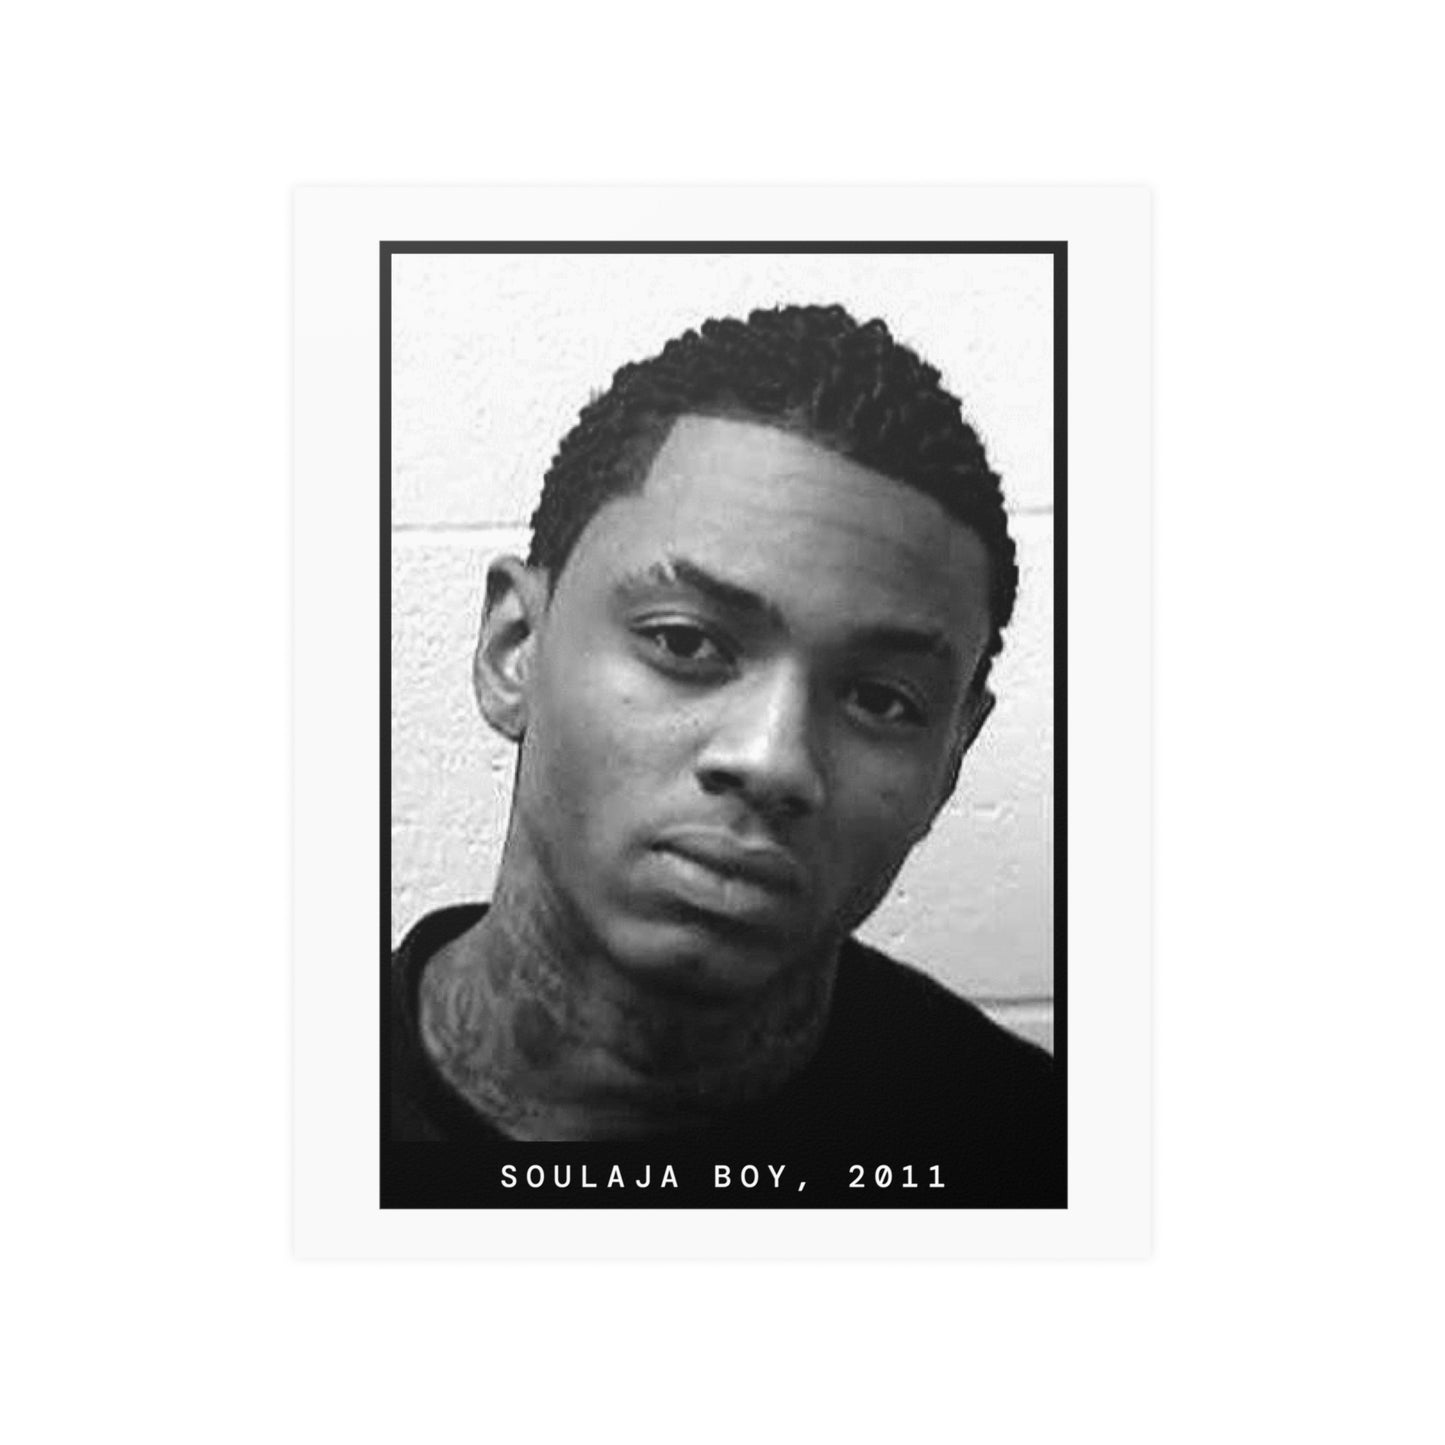 Soulja Boy, 2011 Rapper Mugshot Poster